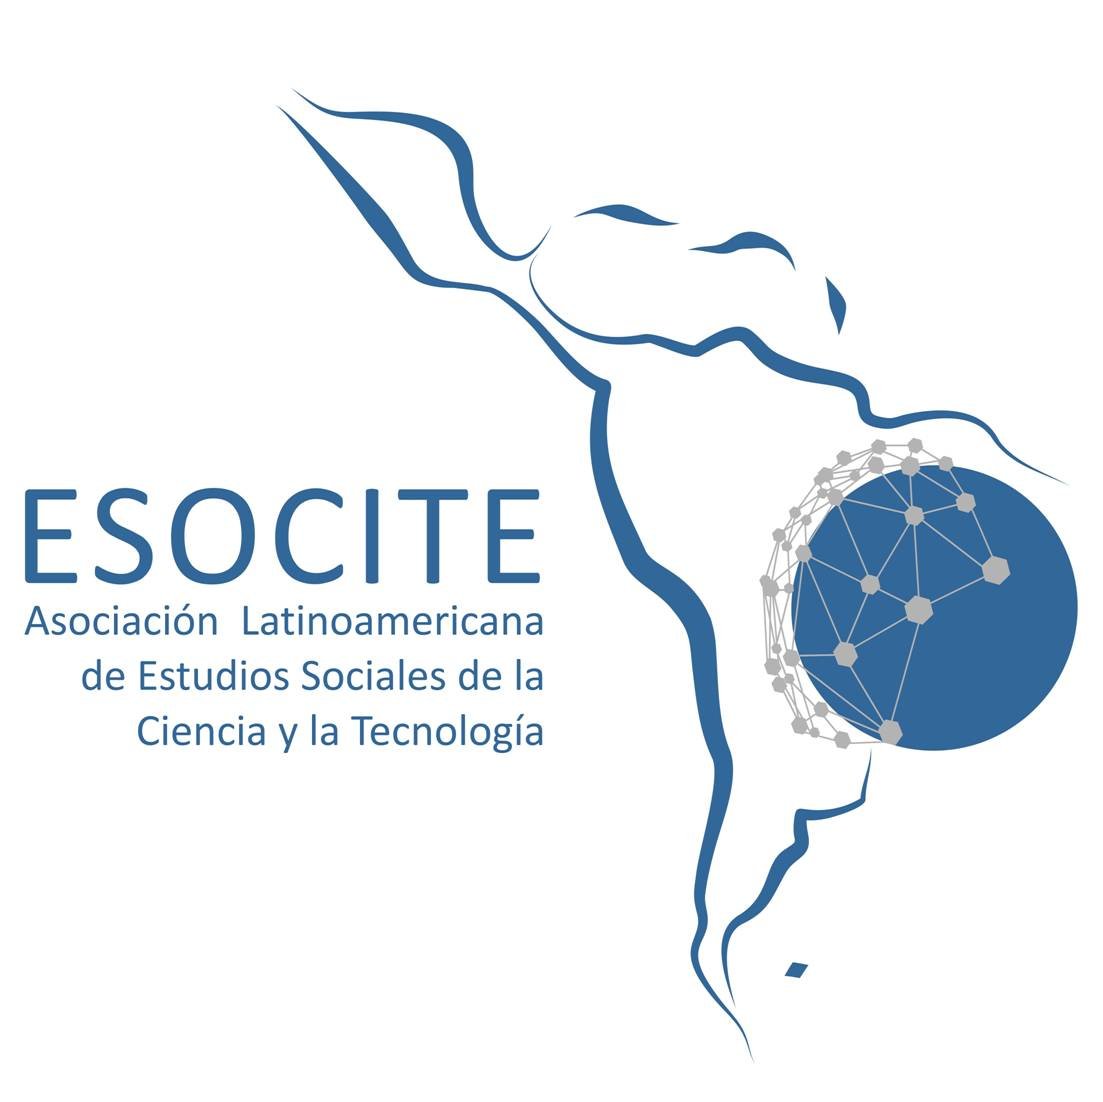 Asociación Latinoamericana de Estudios Sociales de la Ciencia y la Tecnología